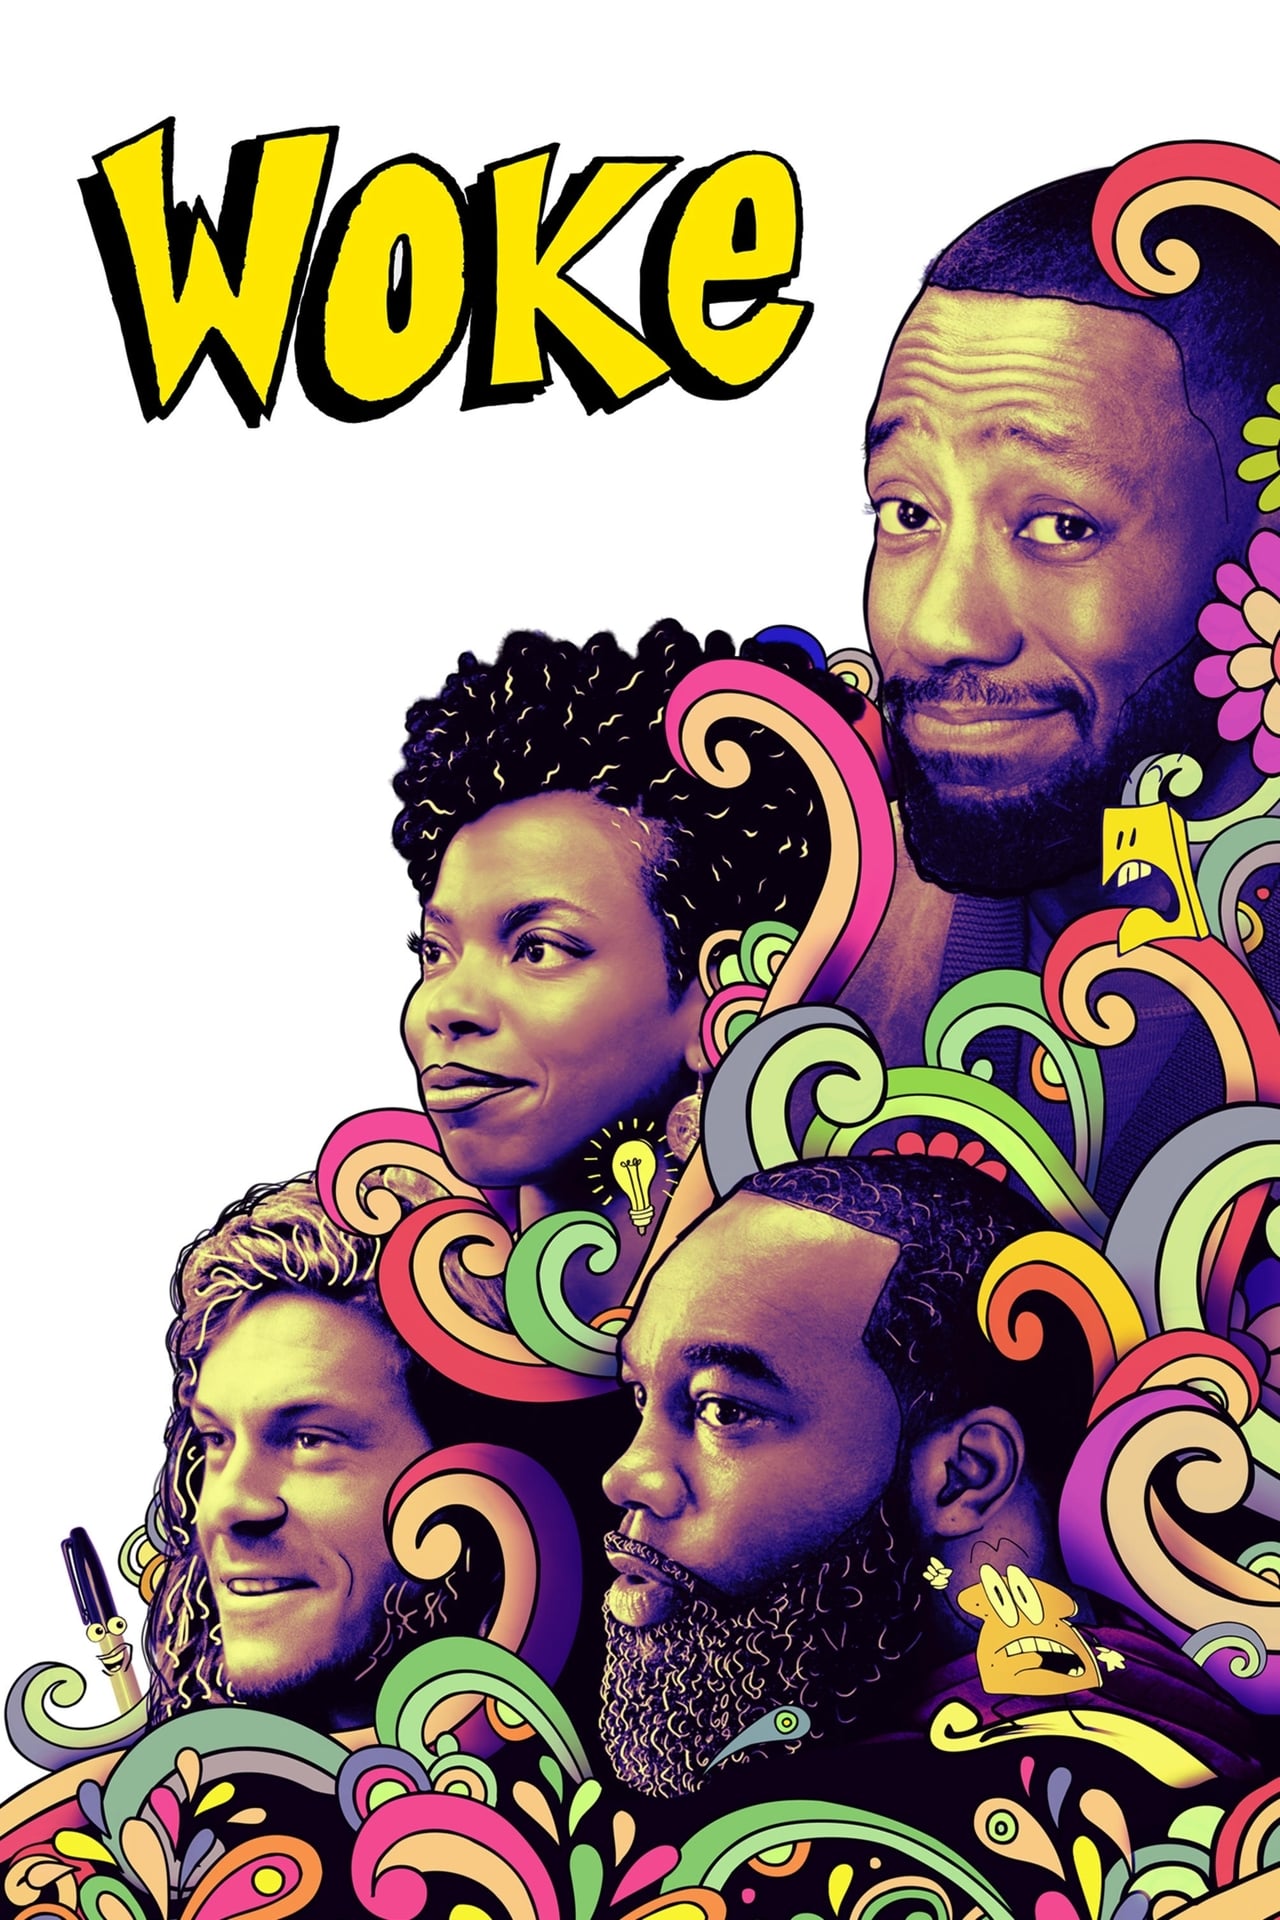 Woke (season 2)